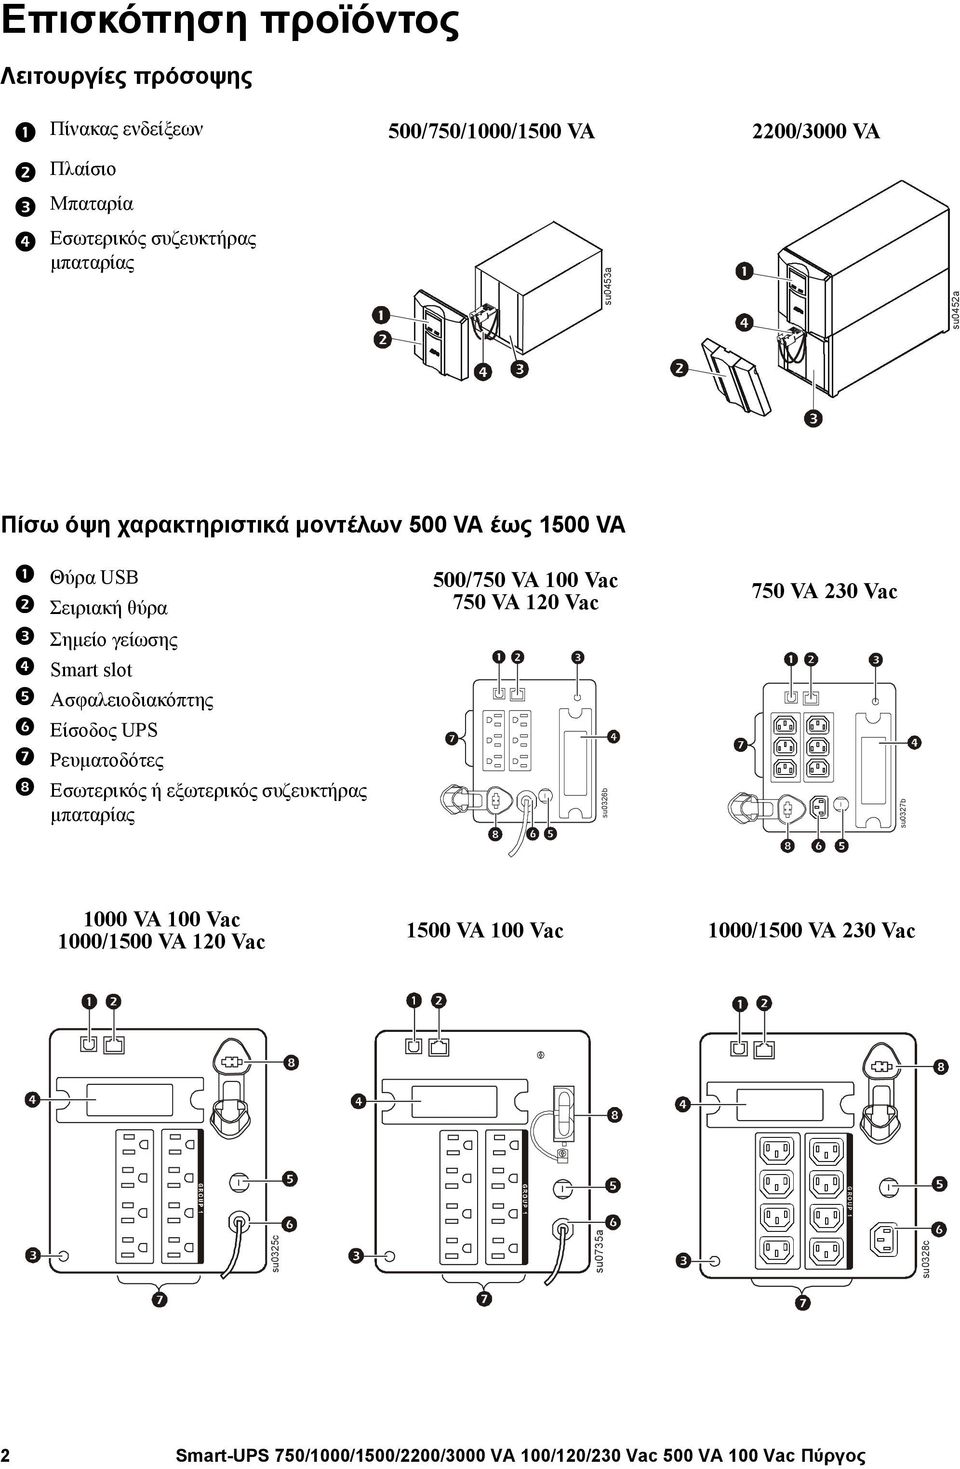 Σημείο γείωσης Smart slot Ασφαλειοδιακόπτης Είσοδος UPS Ρευματοδότες Εσωτερικός ή εξωτερικός συζευκτήρας μπαταρίας su0326b 750 VA 230